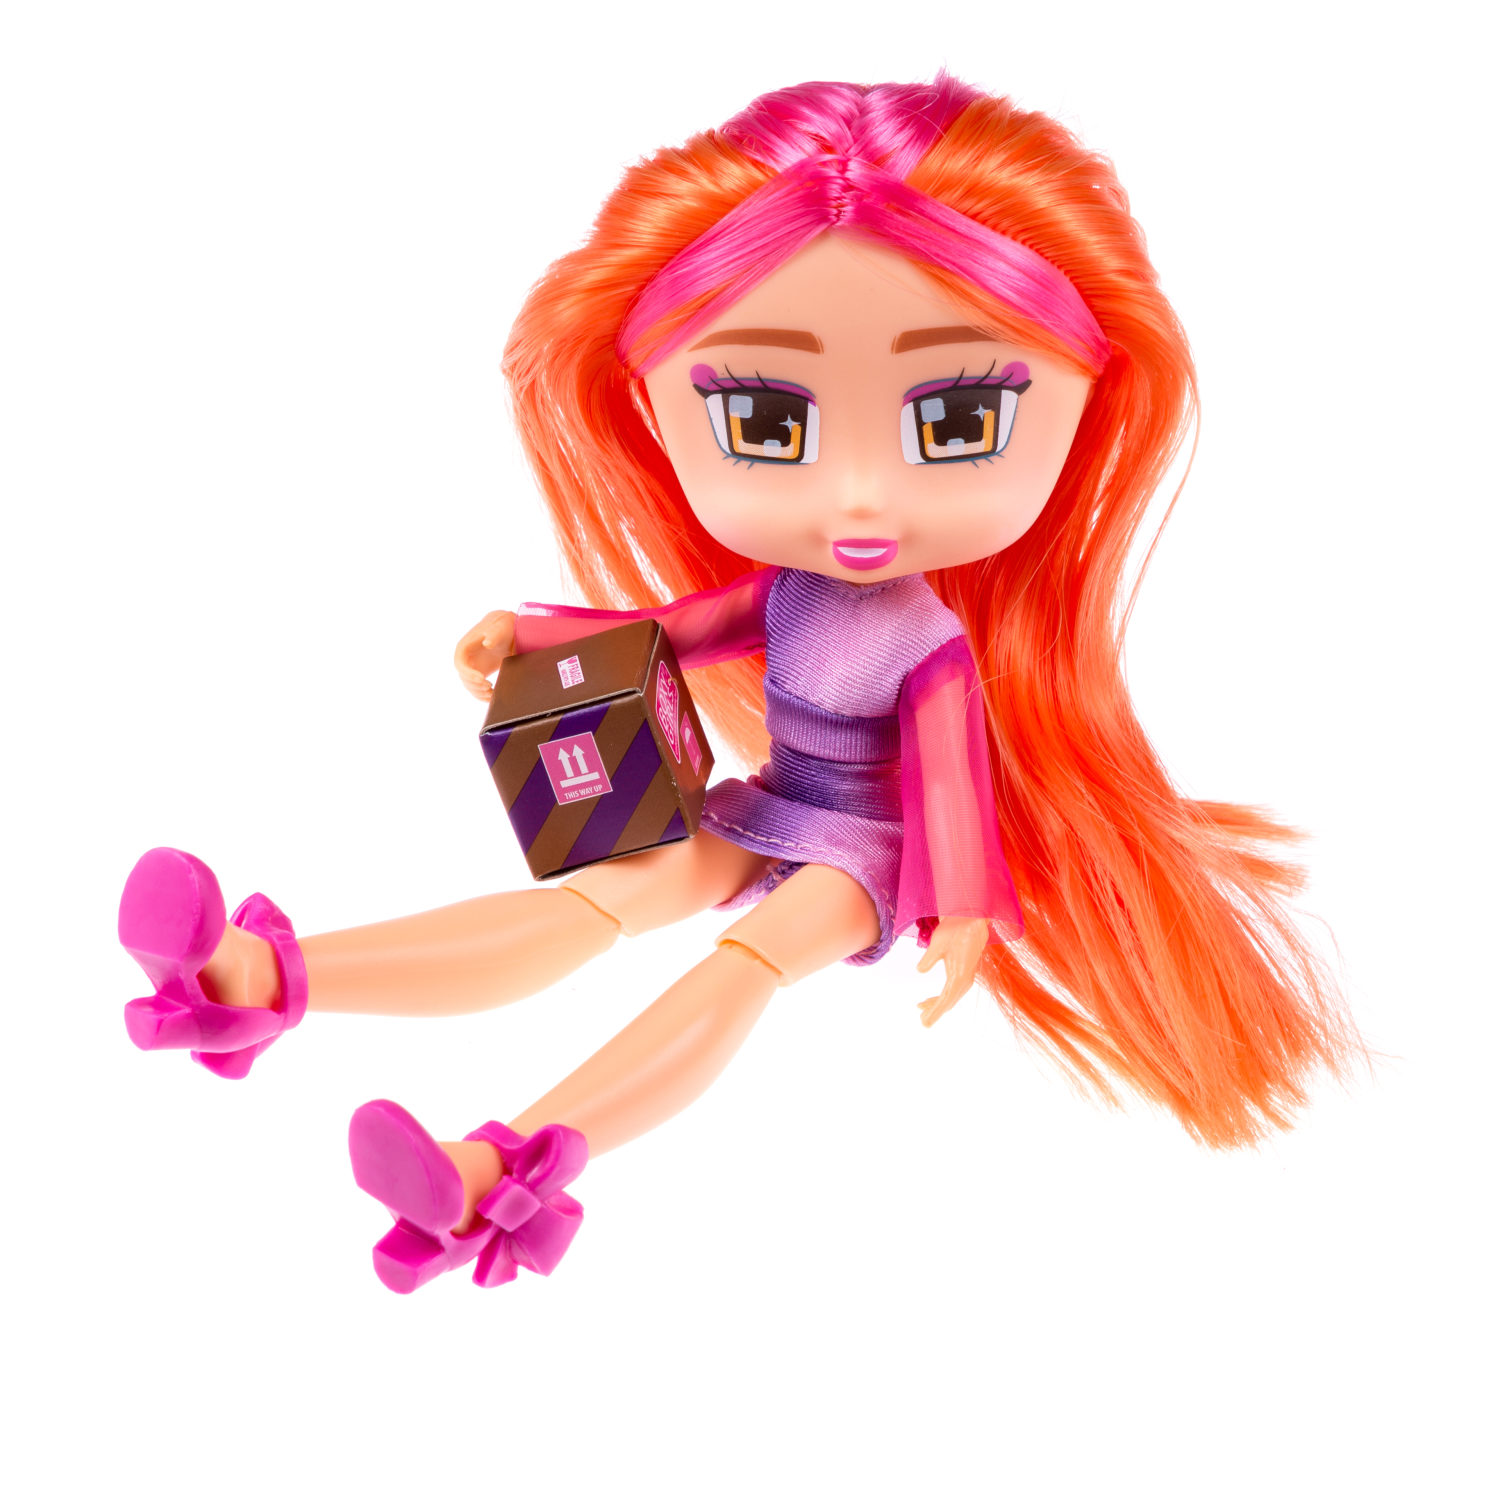 Кукла Boxy Girls – Coco, 20 см. с аксессуаром в 1 коробочке  